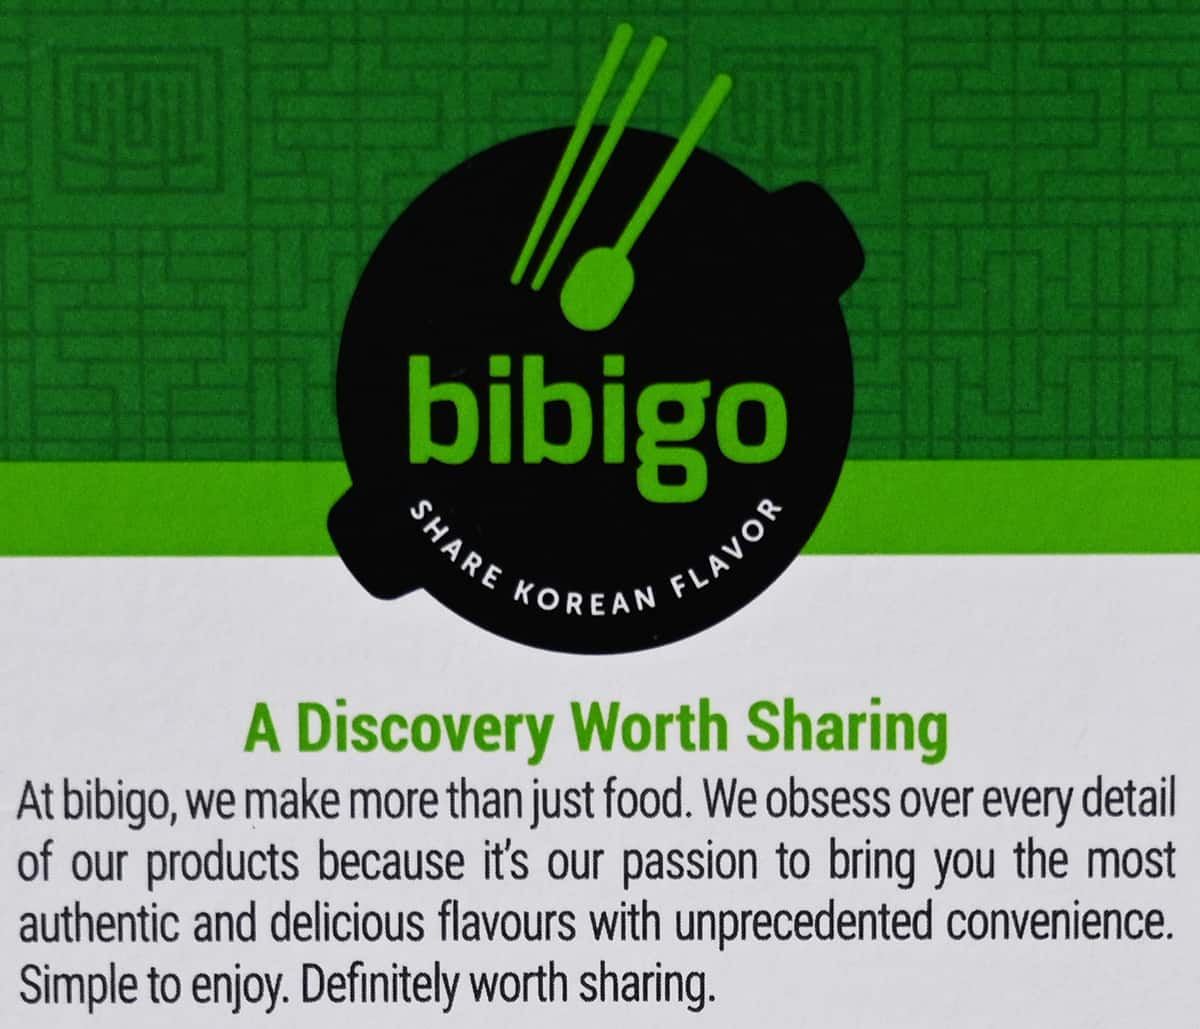 Image of the Bibigo vegetable fried rice company description.